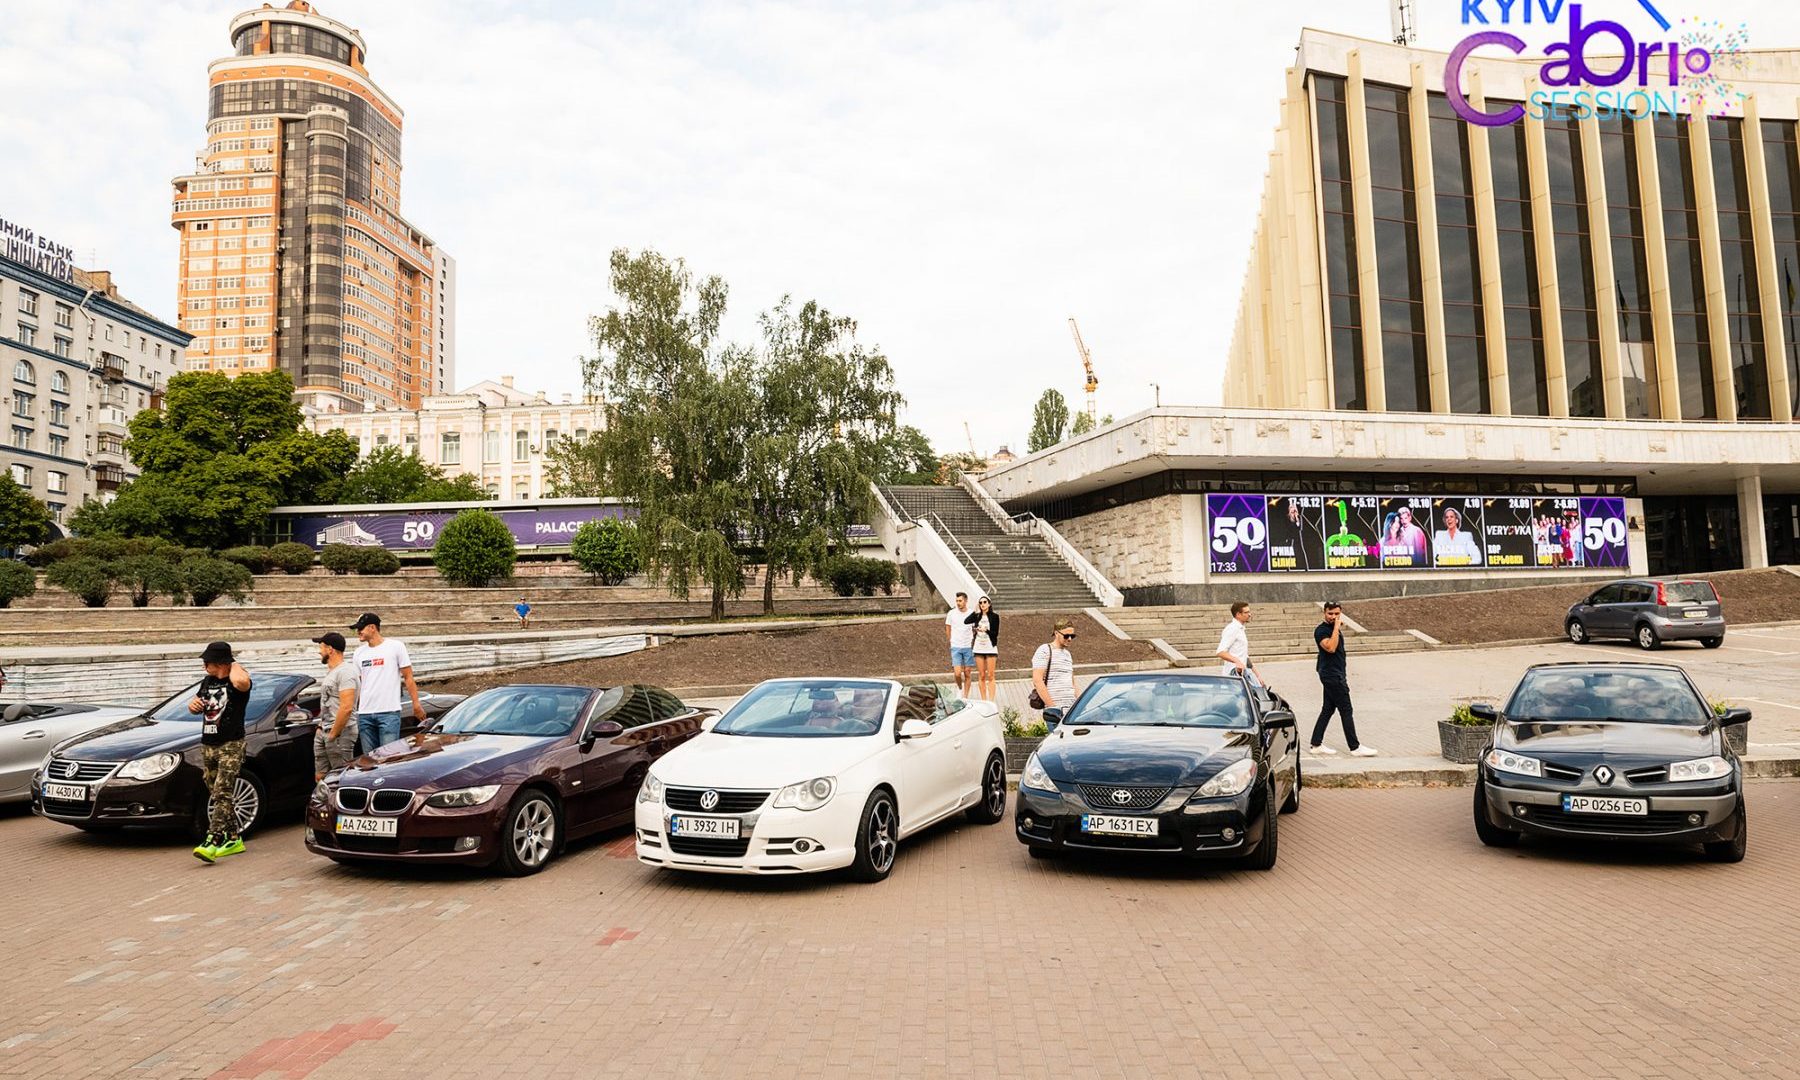 100 кабриолетов и дискотека: в Киеве впервые состоялся фестиваль KYIV CABRIO SESSION